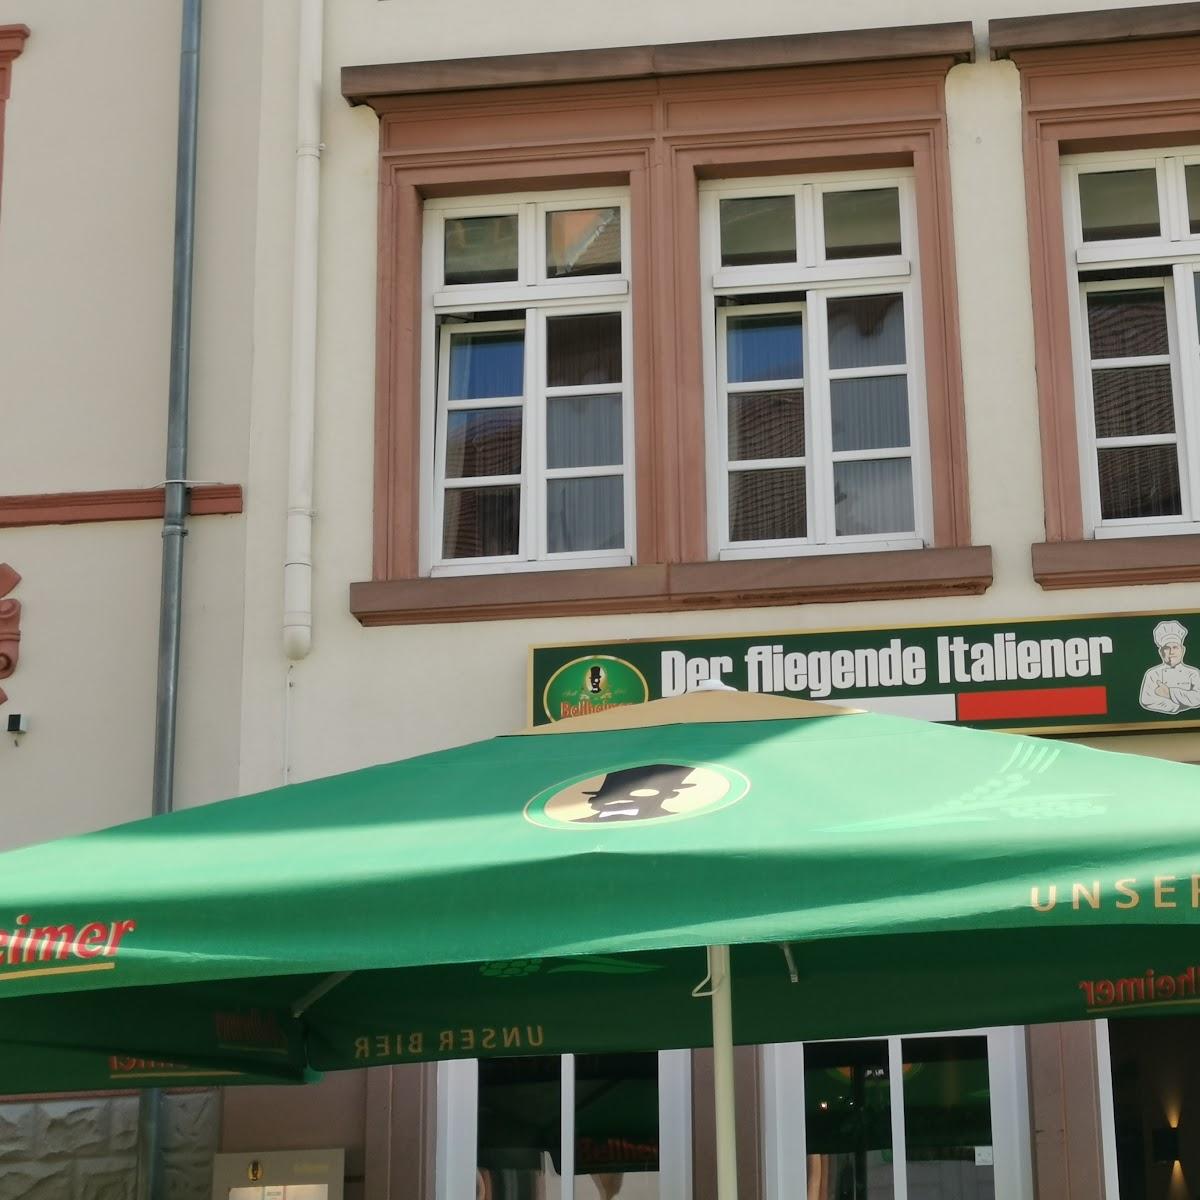 Restaurant "Der Fliegende Italiener Landau Pizzeria Heimservice" in Landau in der Pfalz